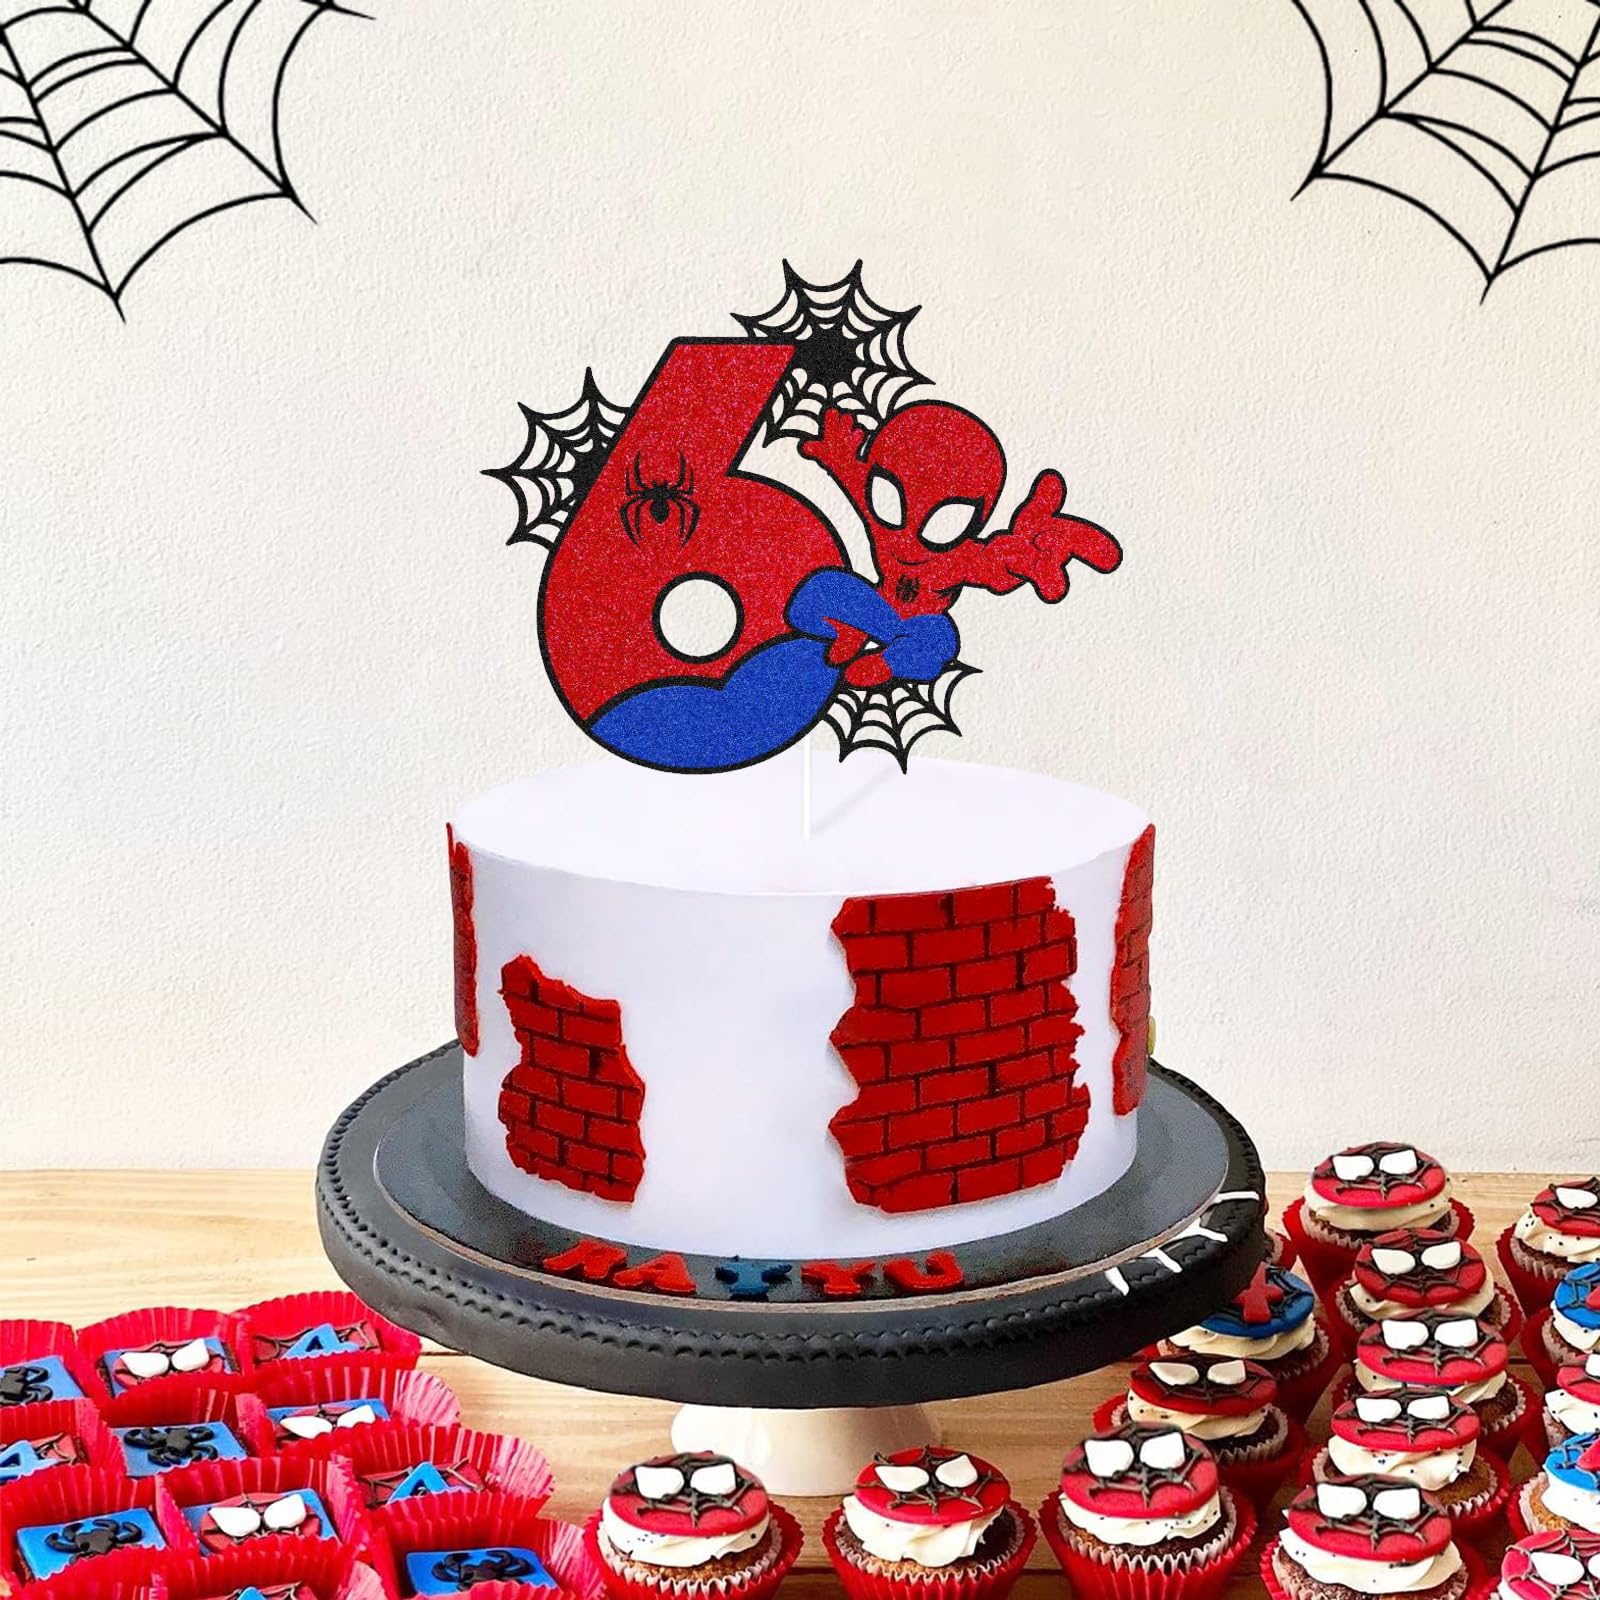 6st Birthday Spidermen Cake Toppers,Personalised Happy 6st Birthday Cake Toppers for Kids,Boy,Girl,Spider Cake Toppers Birthday Cake Decorations for Children Birthday Party Supplies